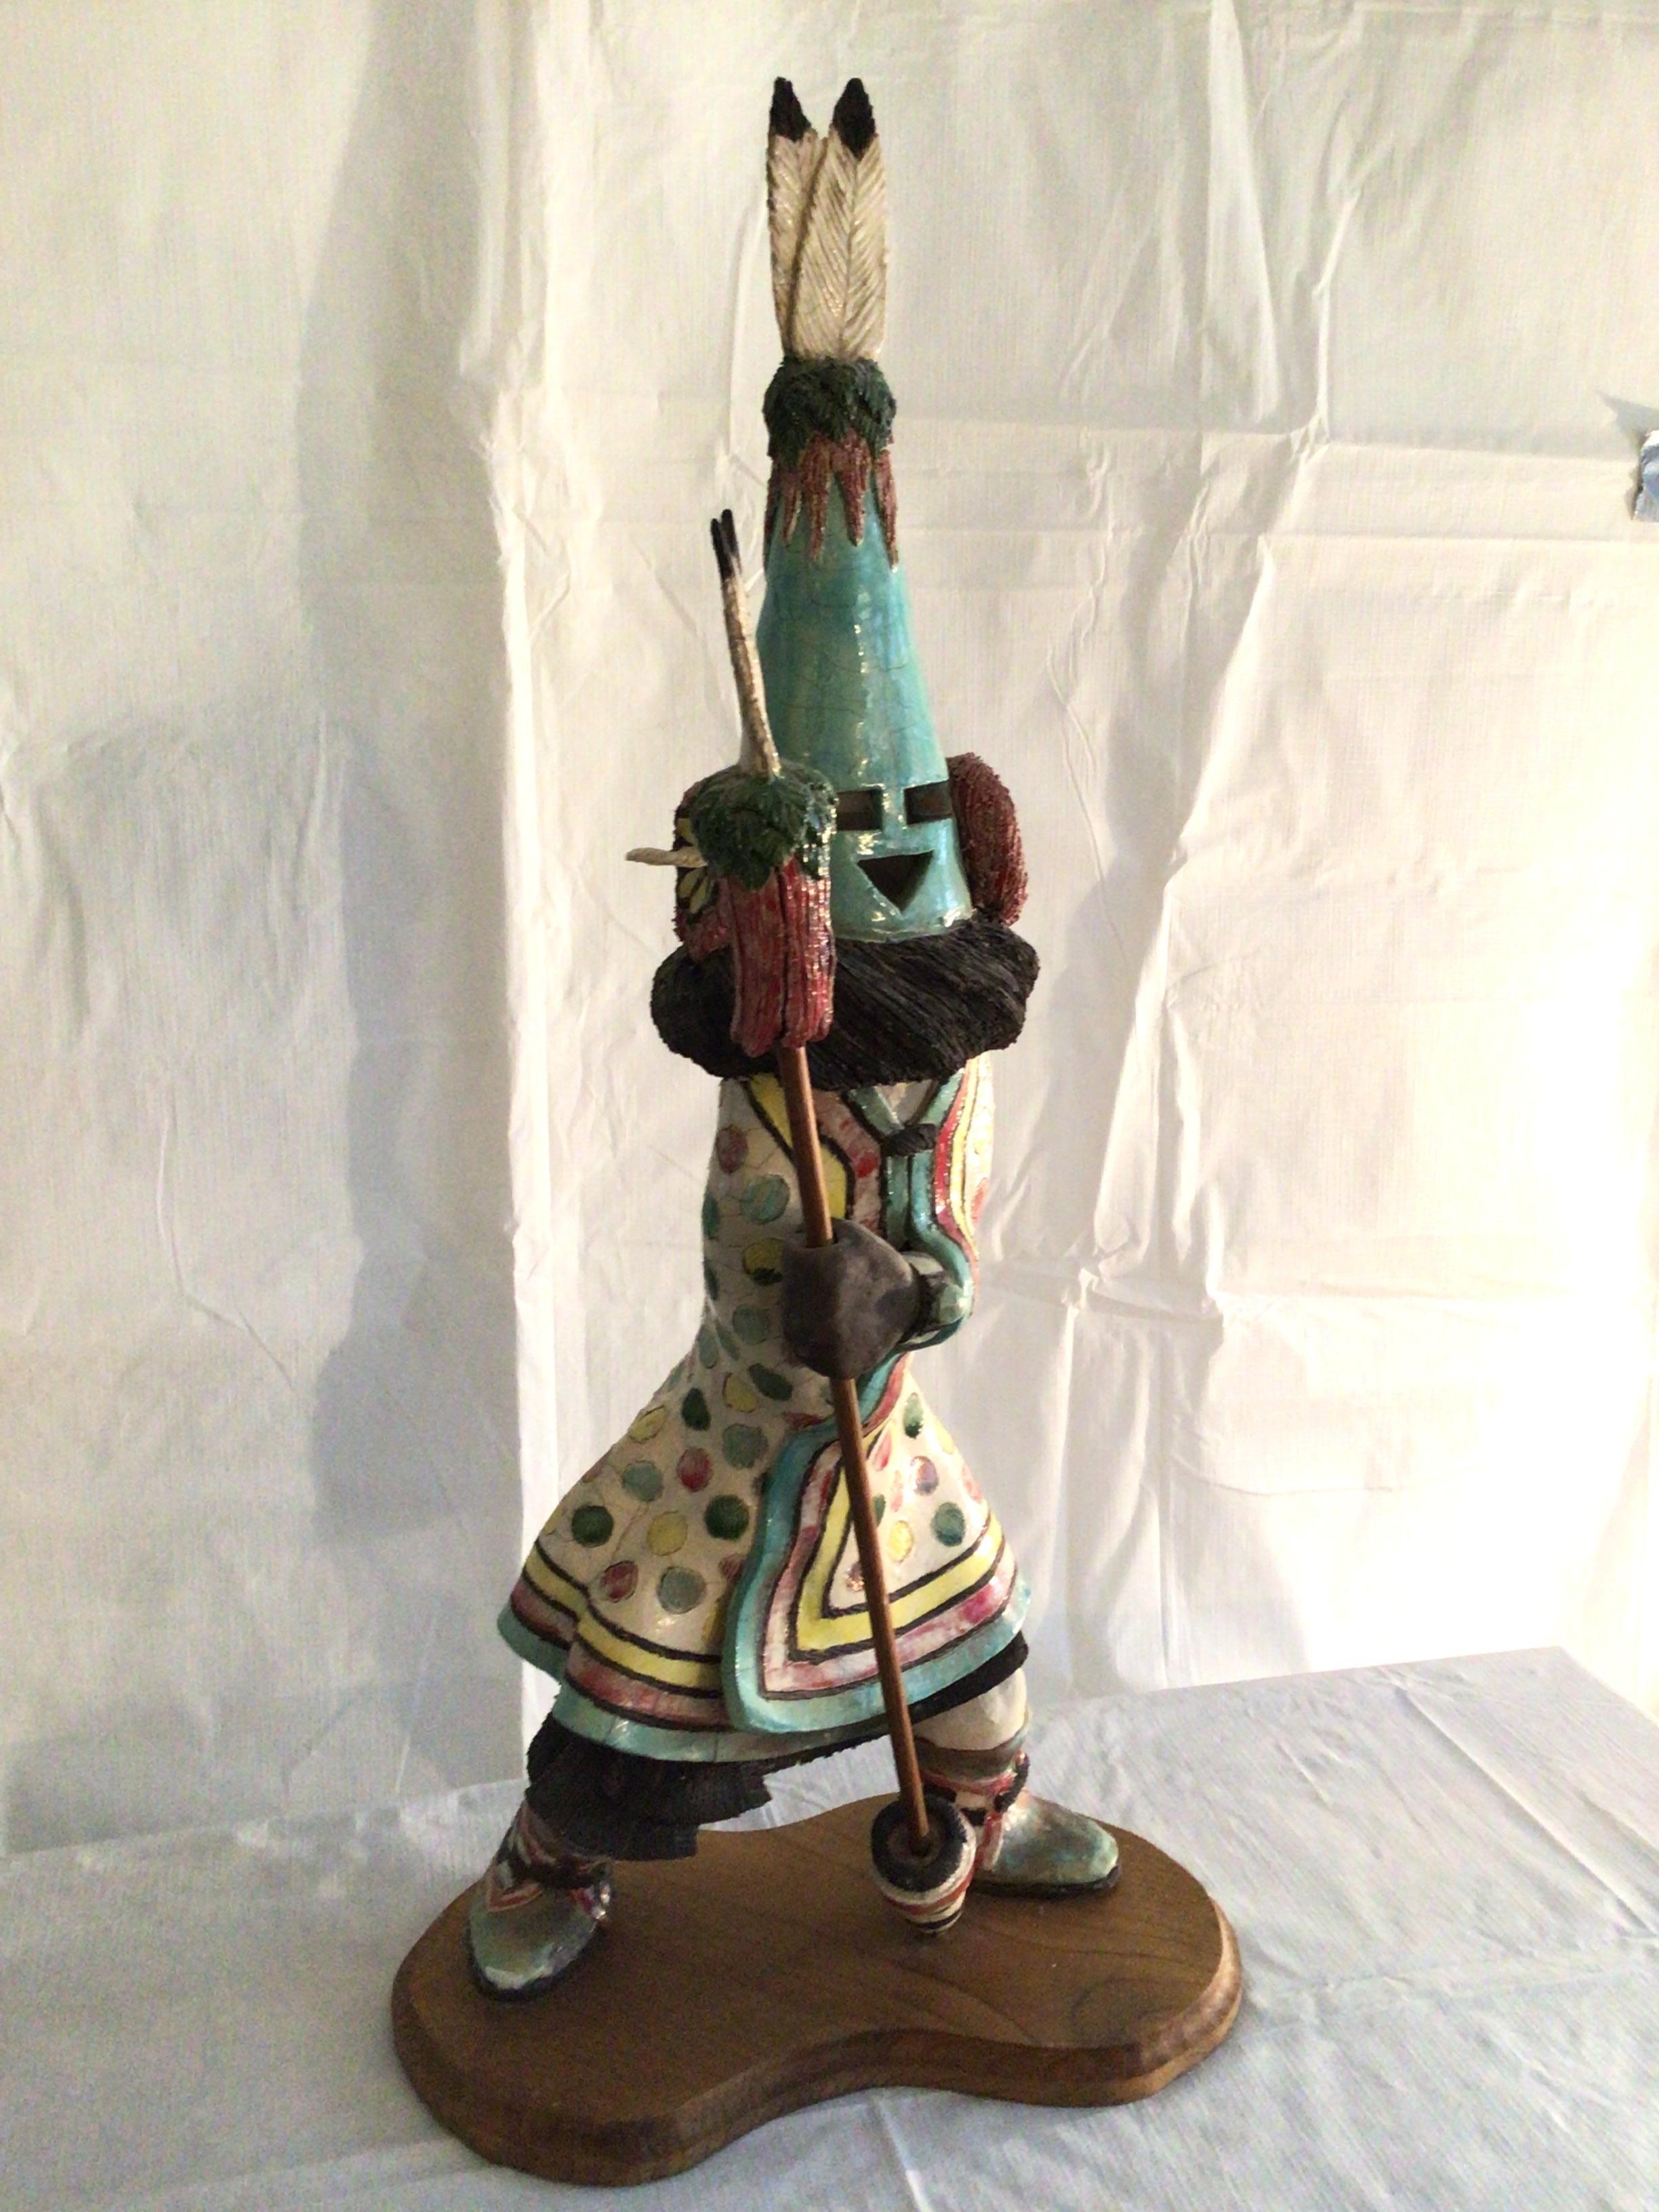 1995 Hopi Kachina Puppe - Aholi auf Holzsockel
Mattiert und glasiert in Keramik (schwer)
Feder fehlt an einer Ohrmuschel 
Die perfekte Ergänzung für jede Kachina-Puppensammlung
